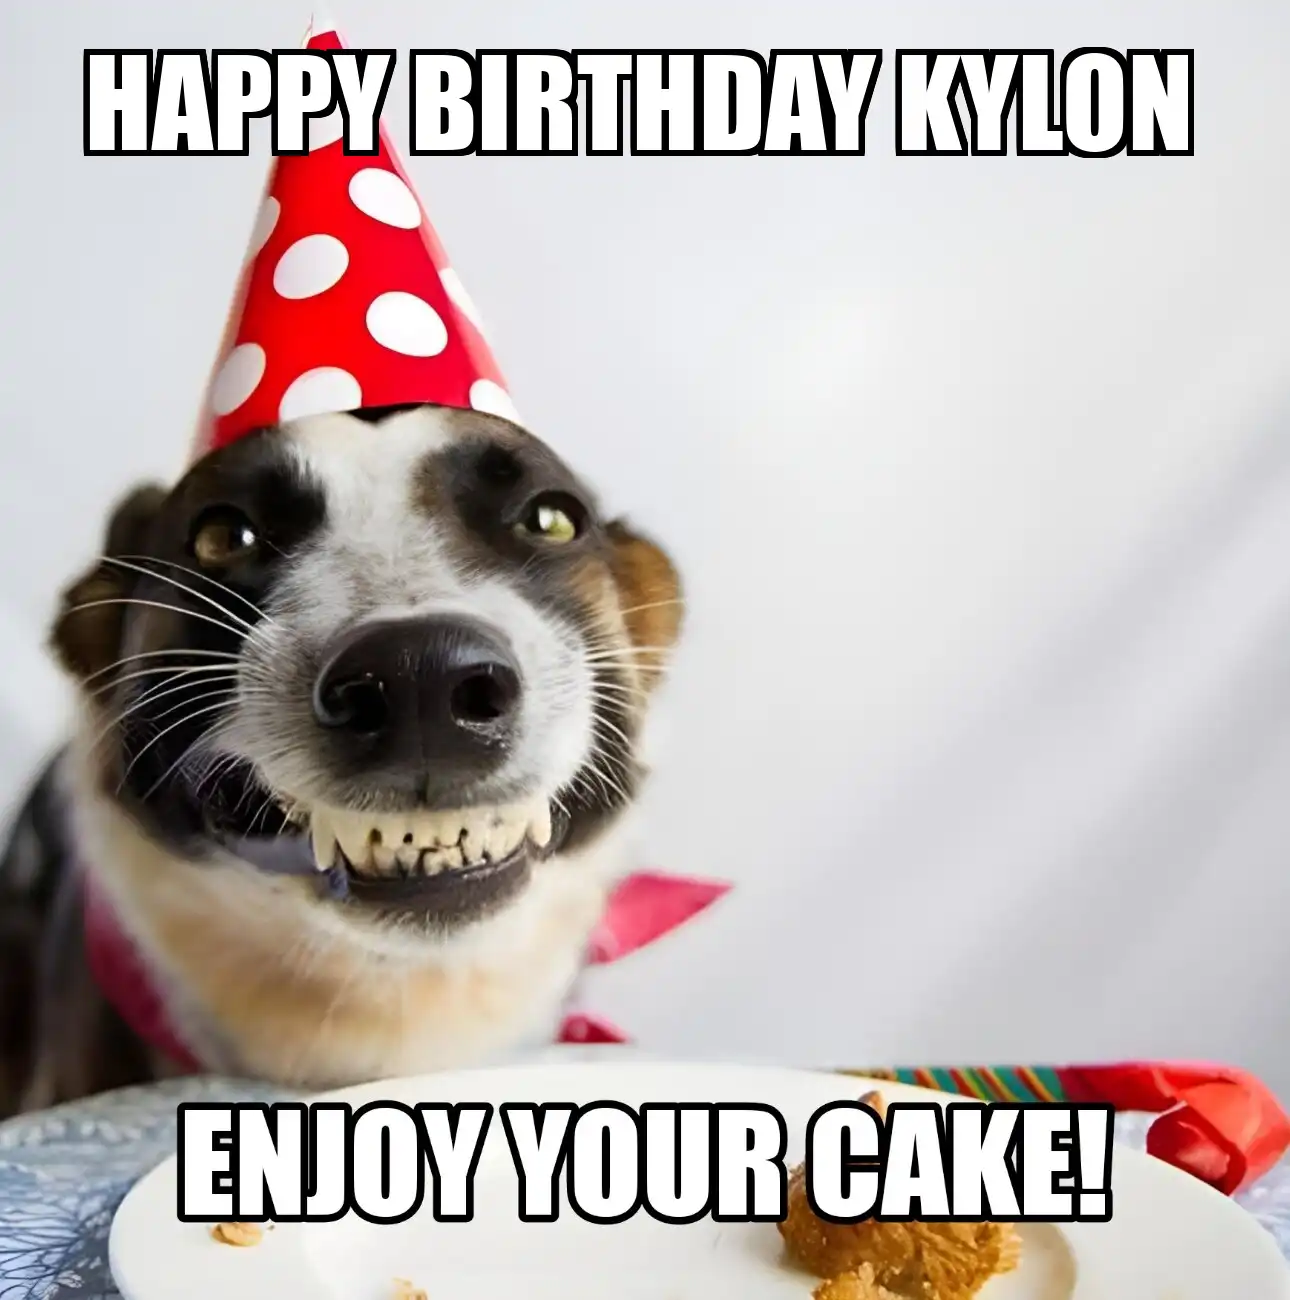 Happy Birthday Kylon Enjoy Your Cake Dog Meme